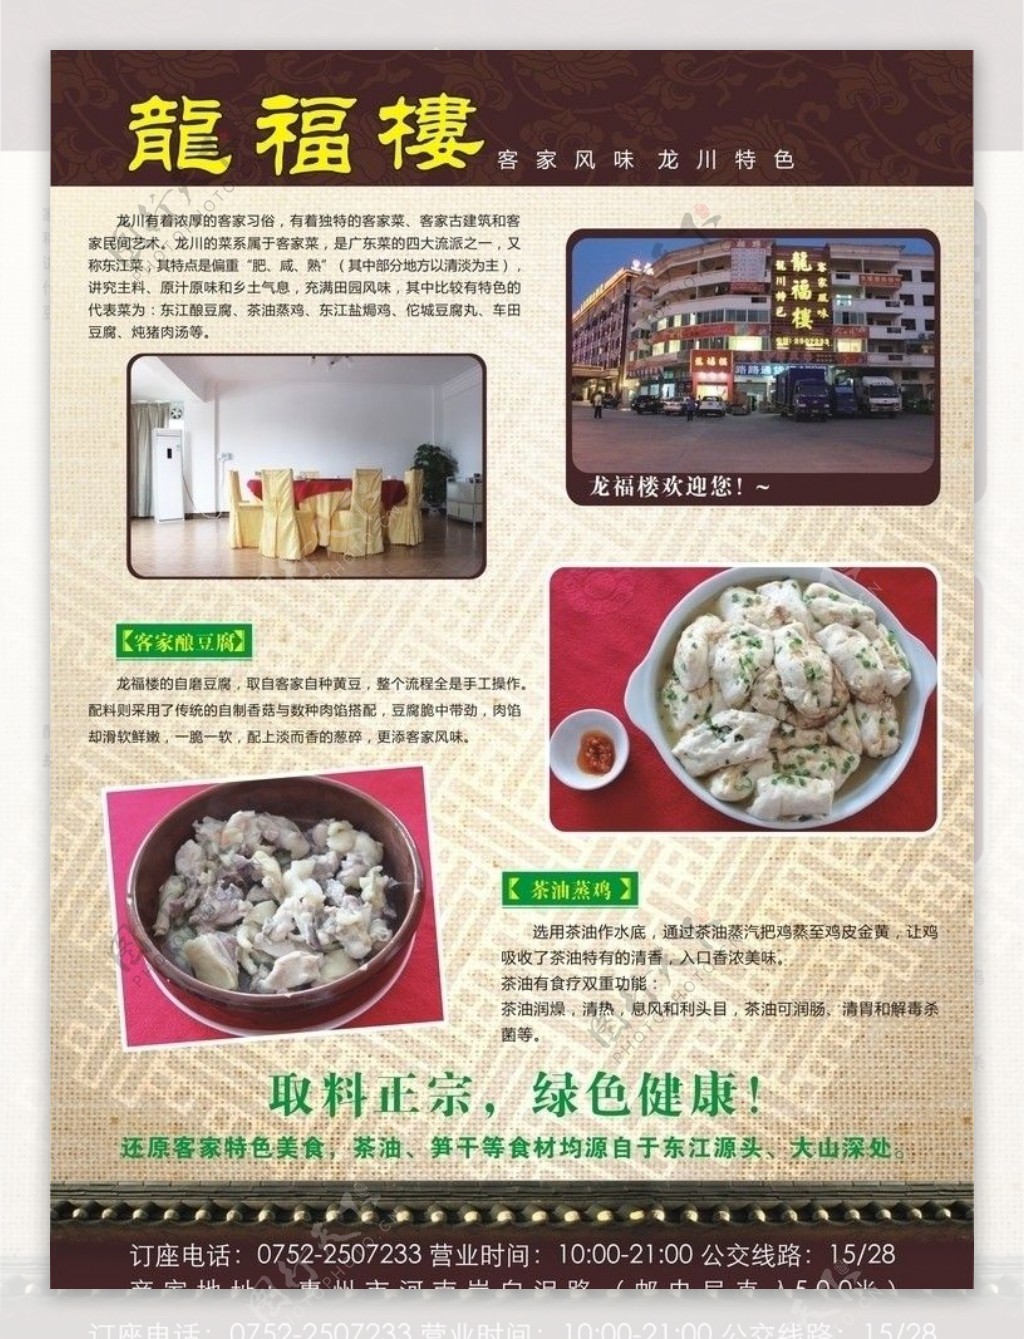 龙福楼宣传单客家风味龙川特色客家酿豆腐茶油蒸鸡客家特色美食图片